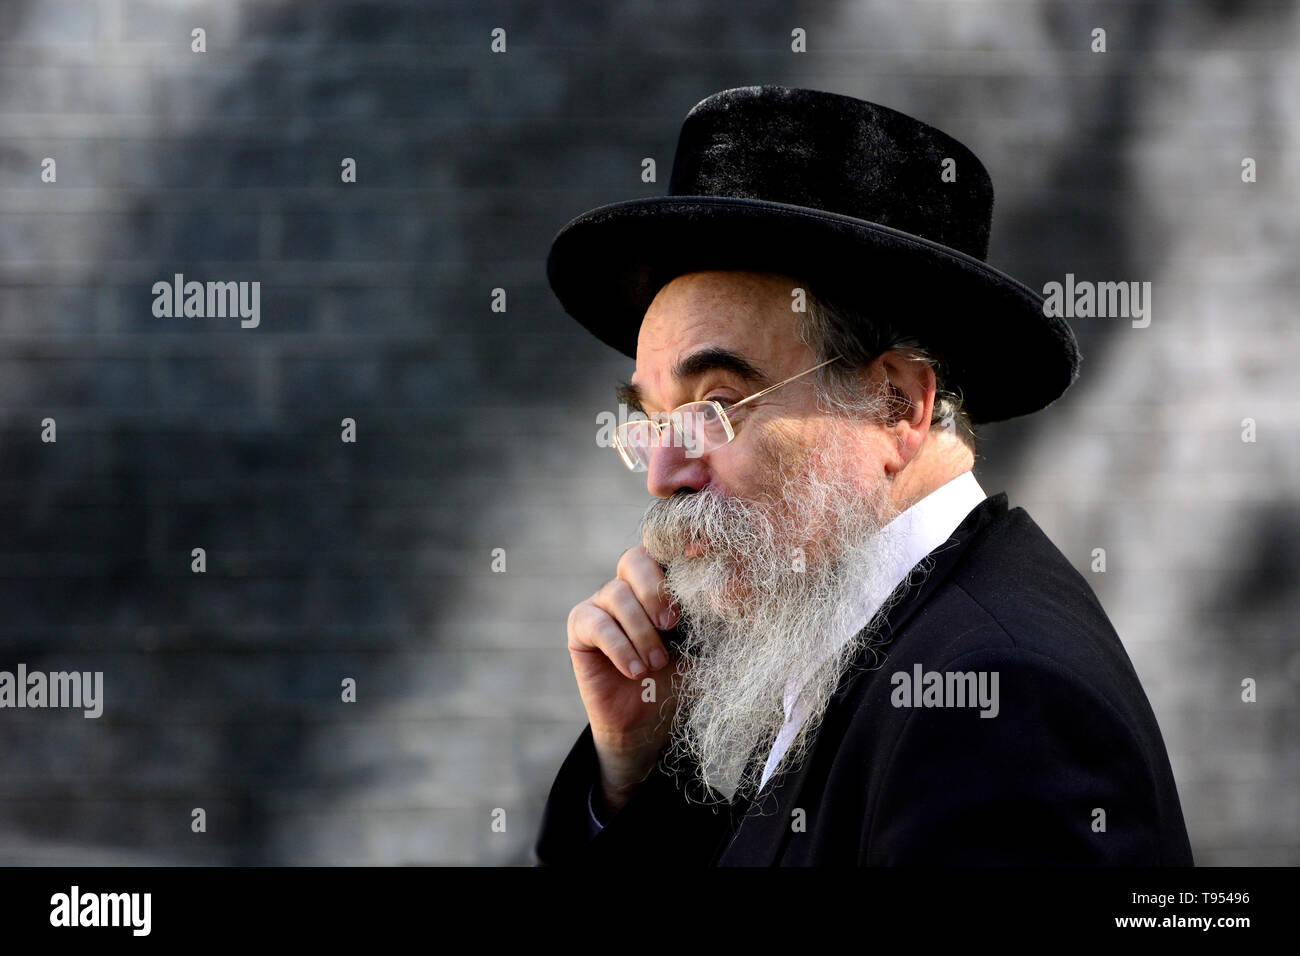 Cappello ebreo immagini e fotografie stock ad alta risoluzione - Alamy